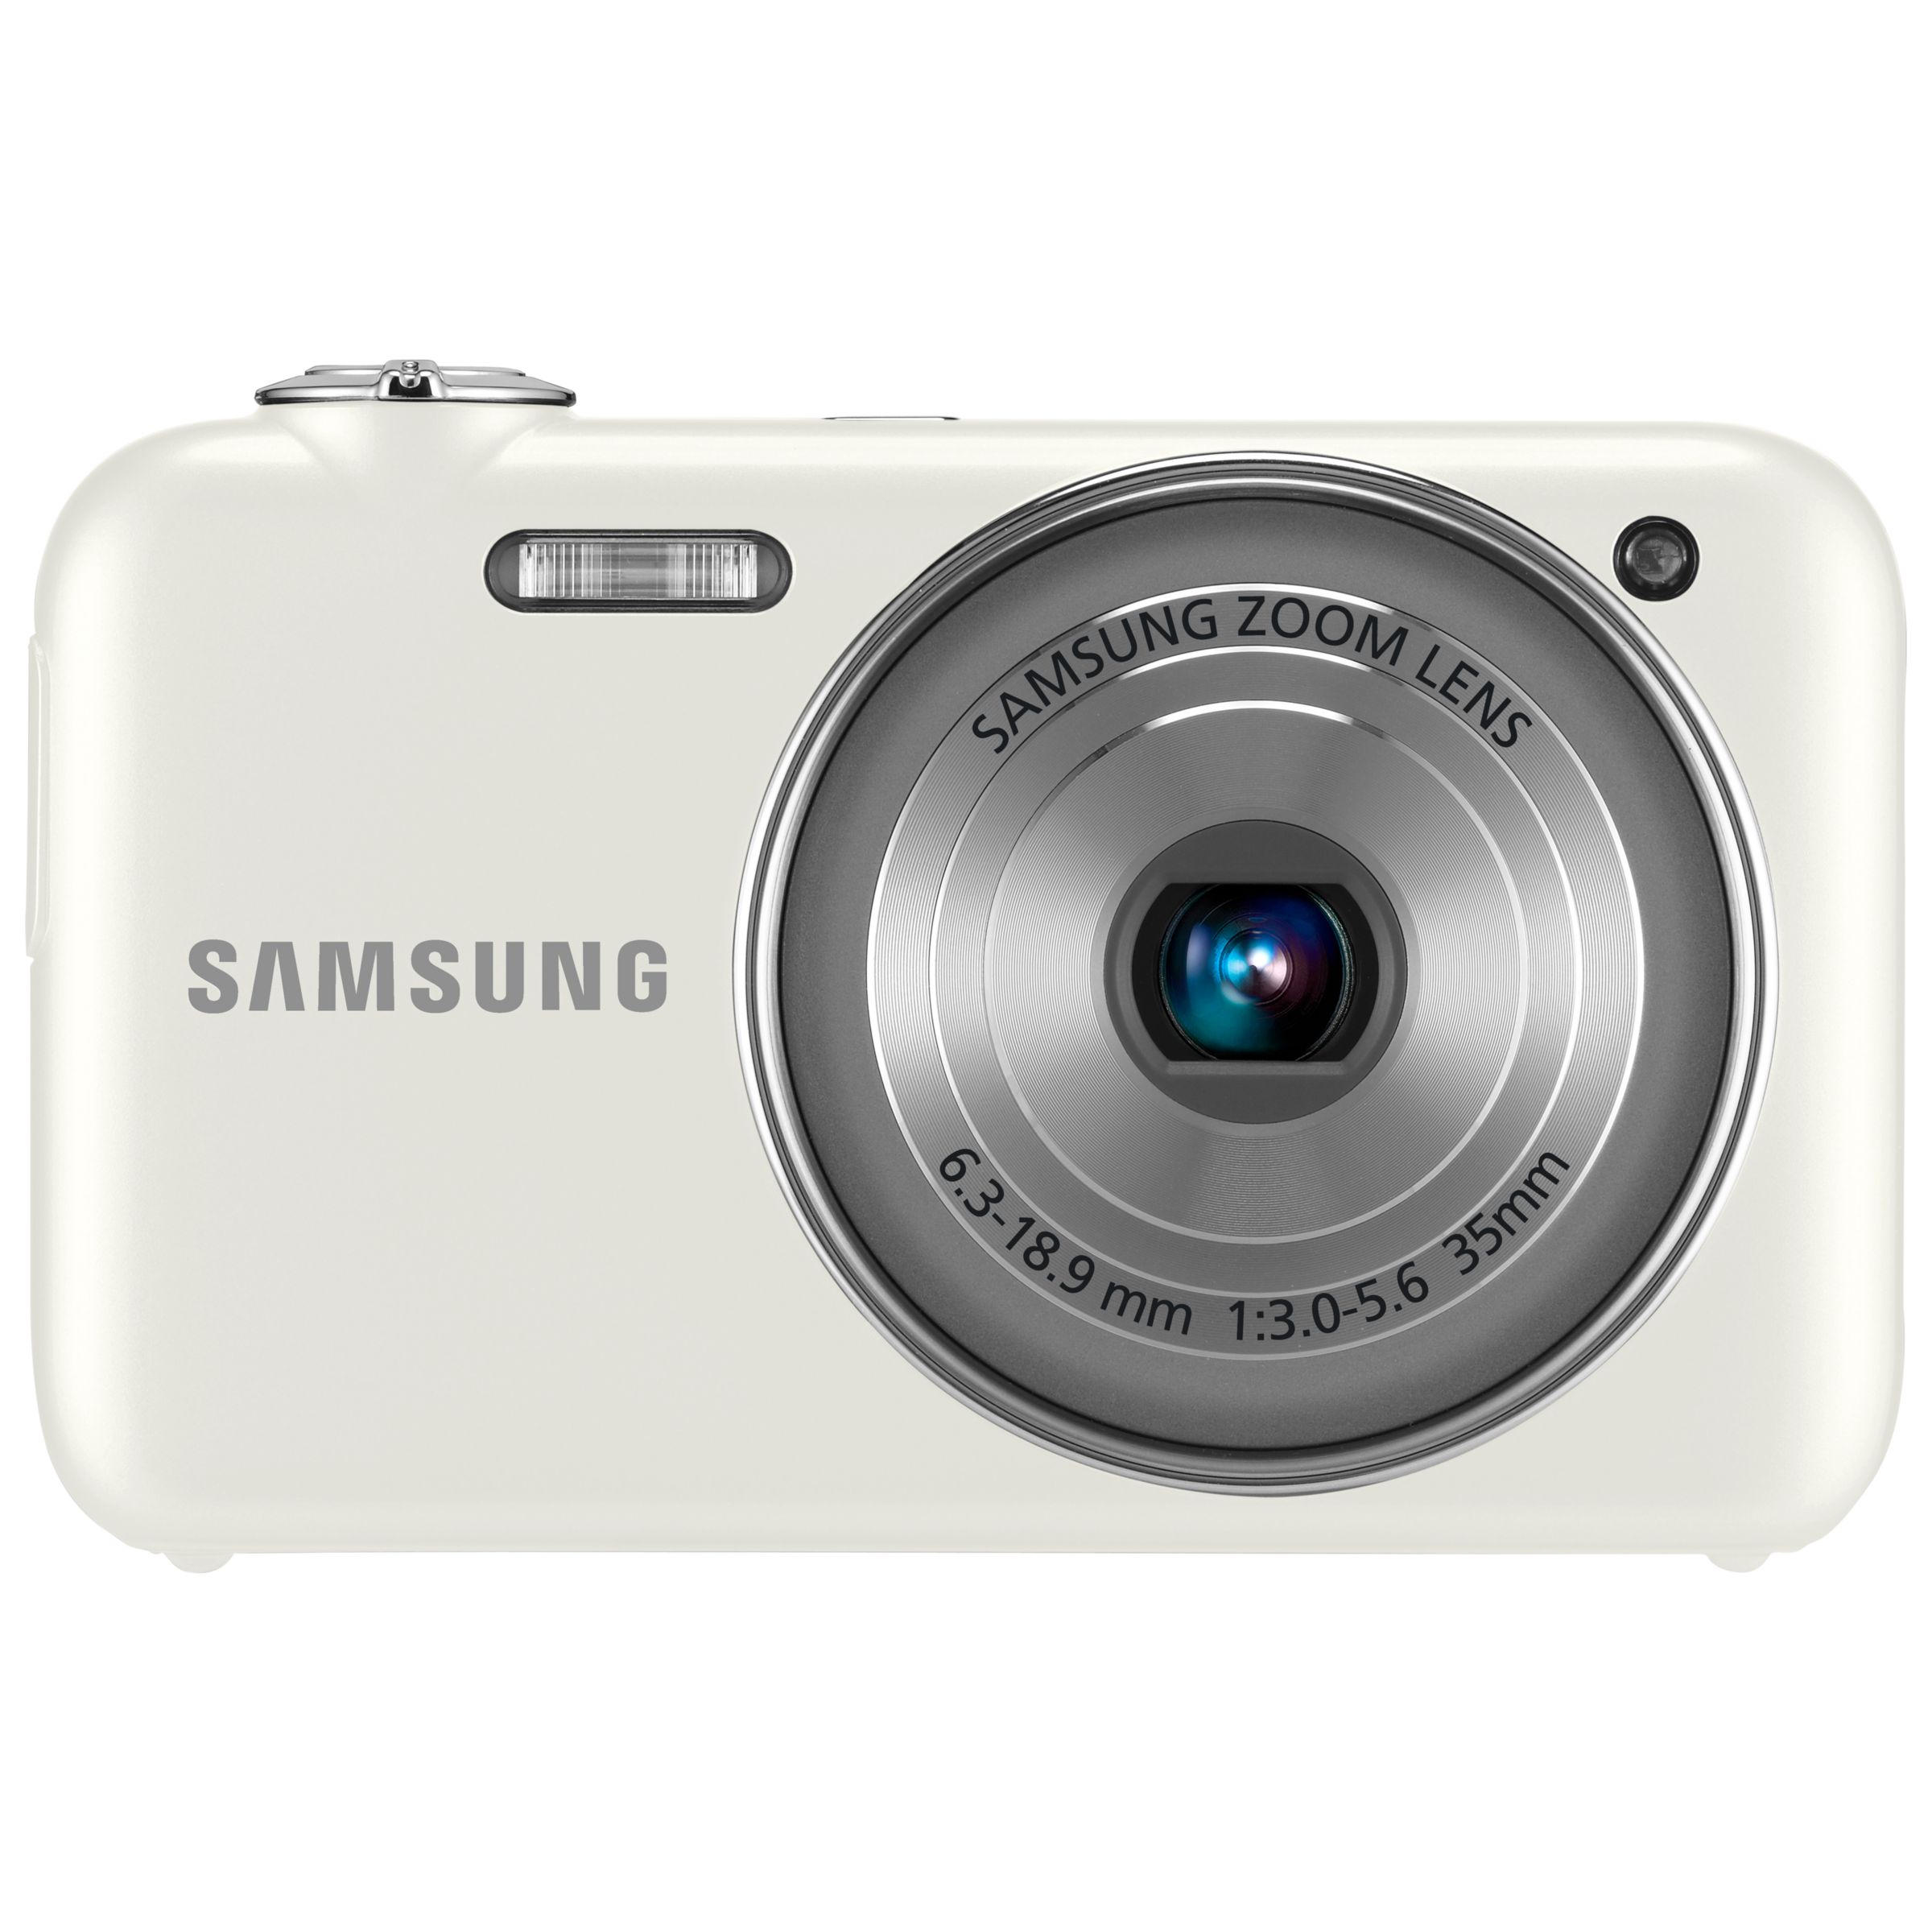 Samsung ST80 Wi-Fi Digital Camera, White at John Lewis